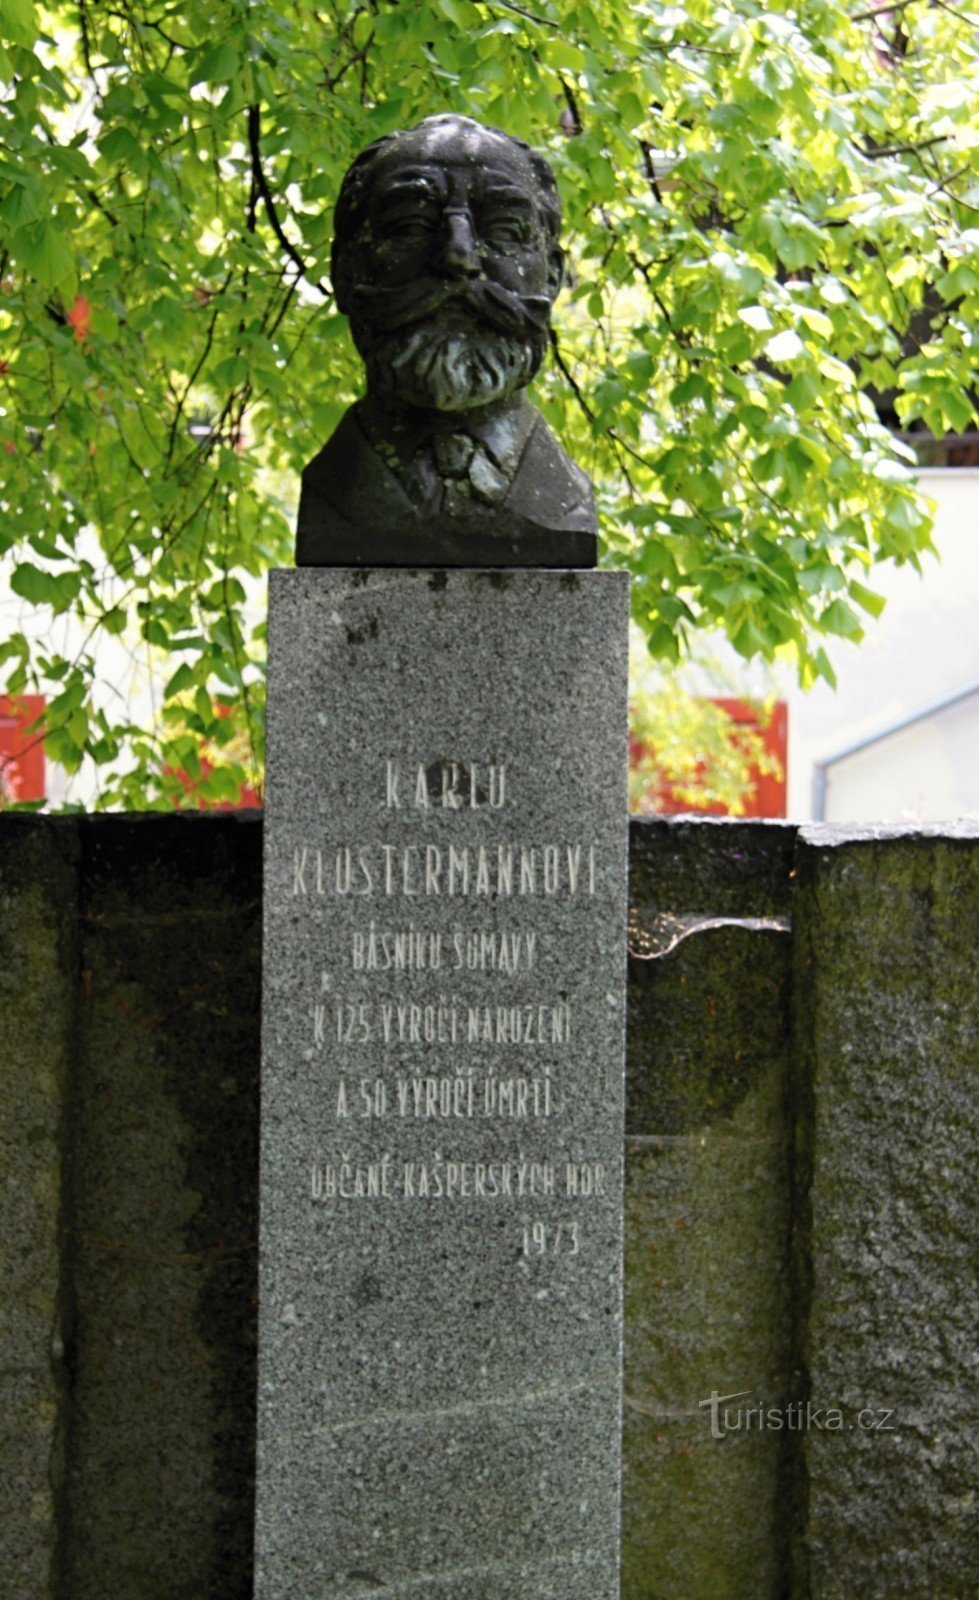 Đài tưởng niệm Karel Klostrmann